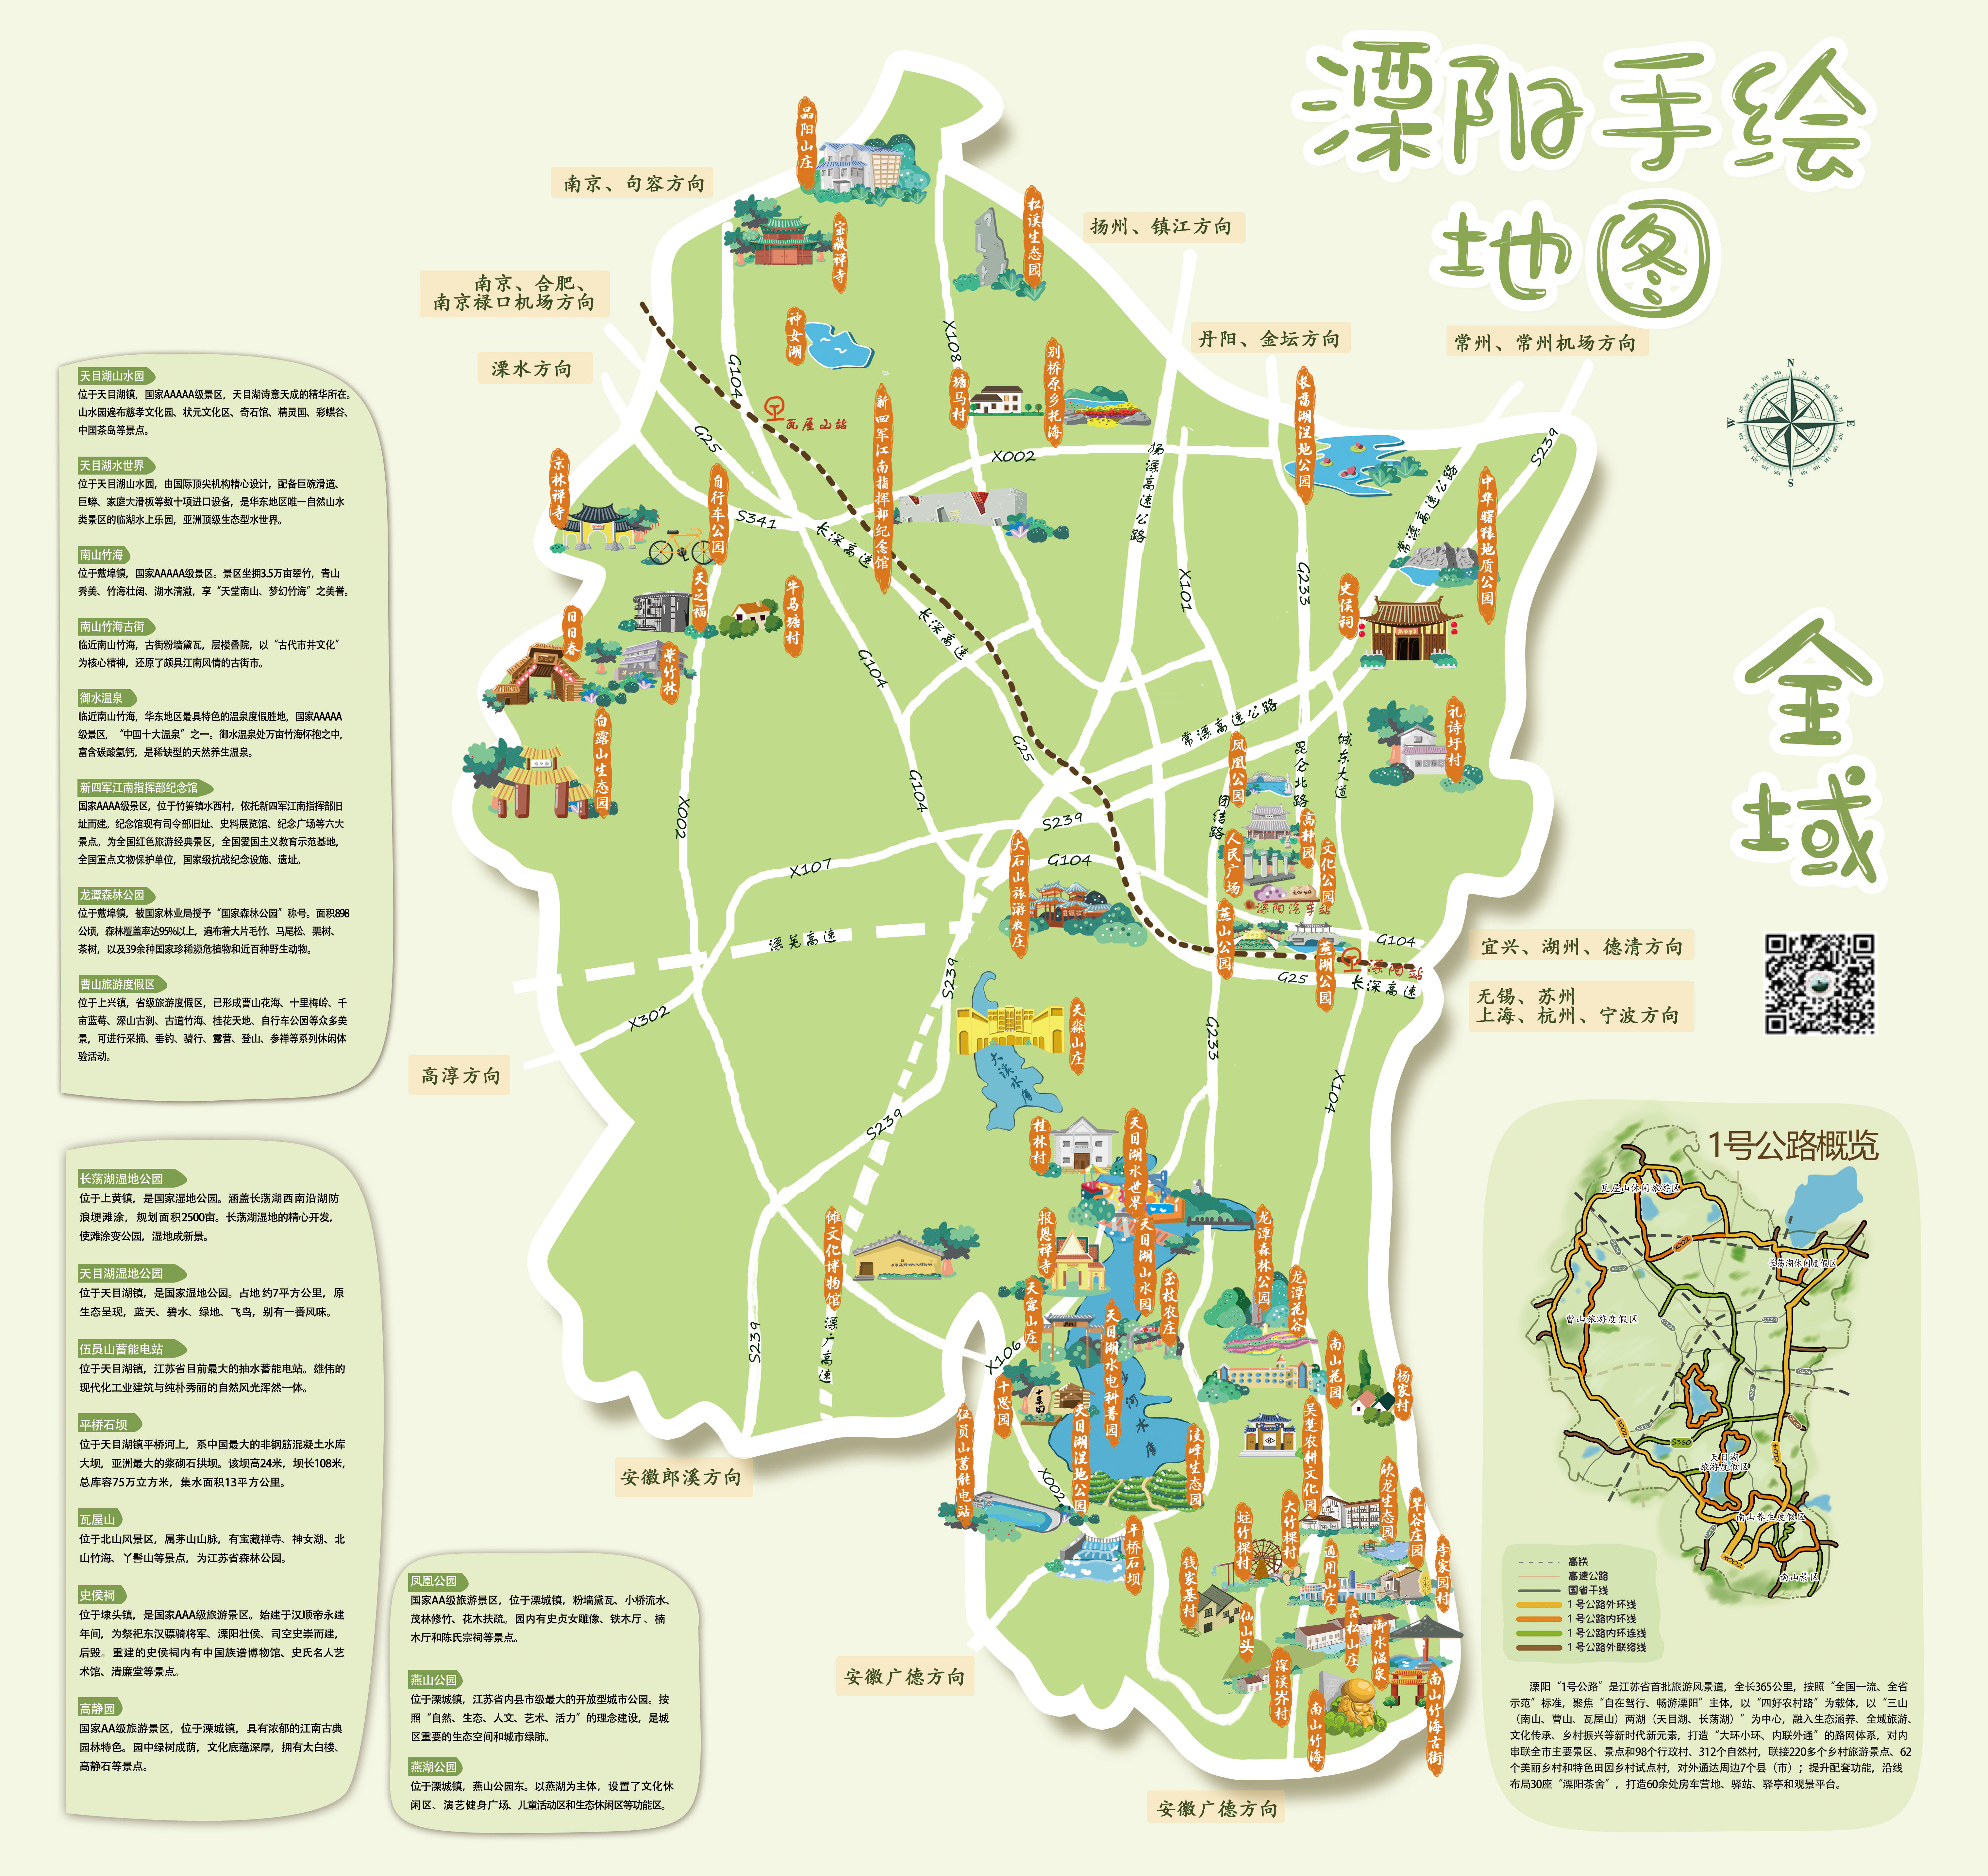 分享收藏中秋蟹卡设计溧阳手绘地图